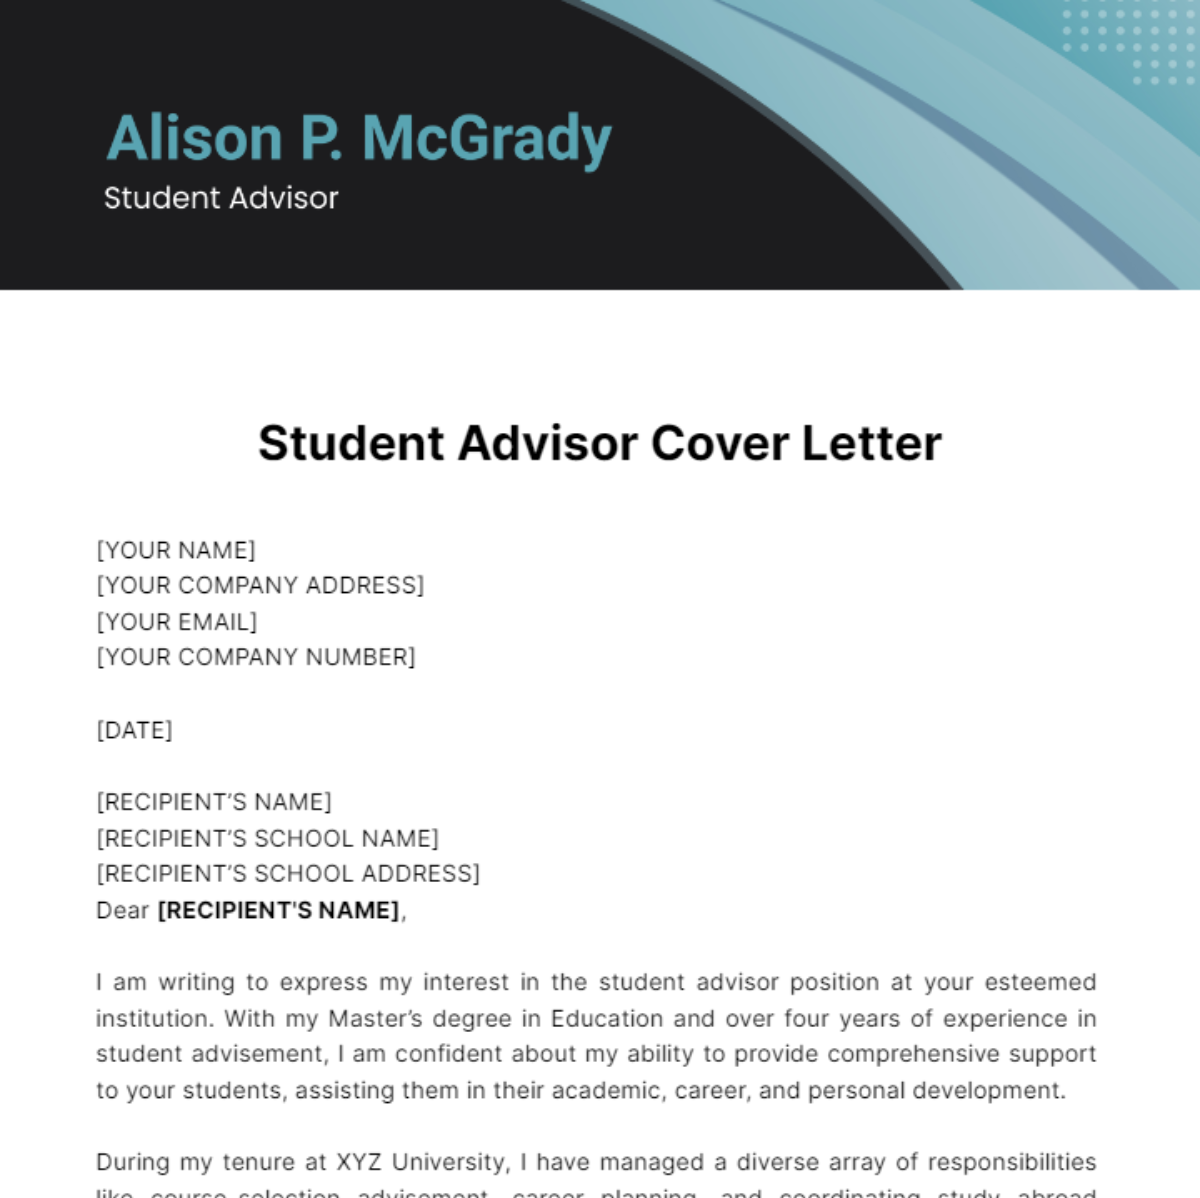 Student Advisor Cover Letter Template